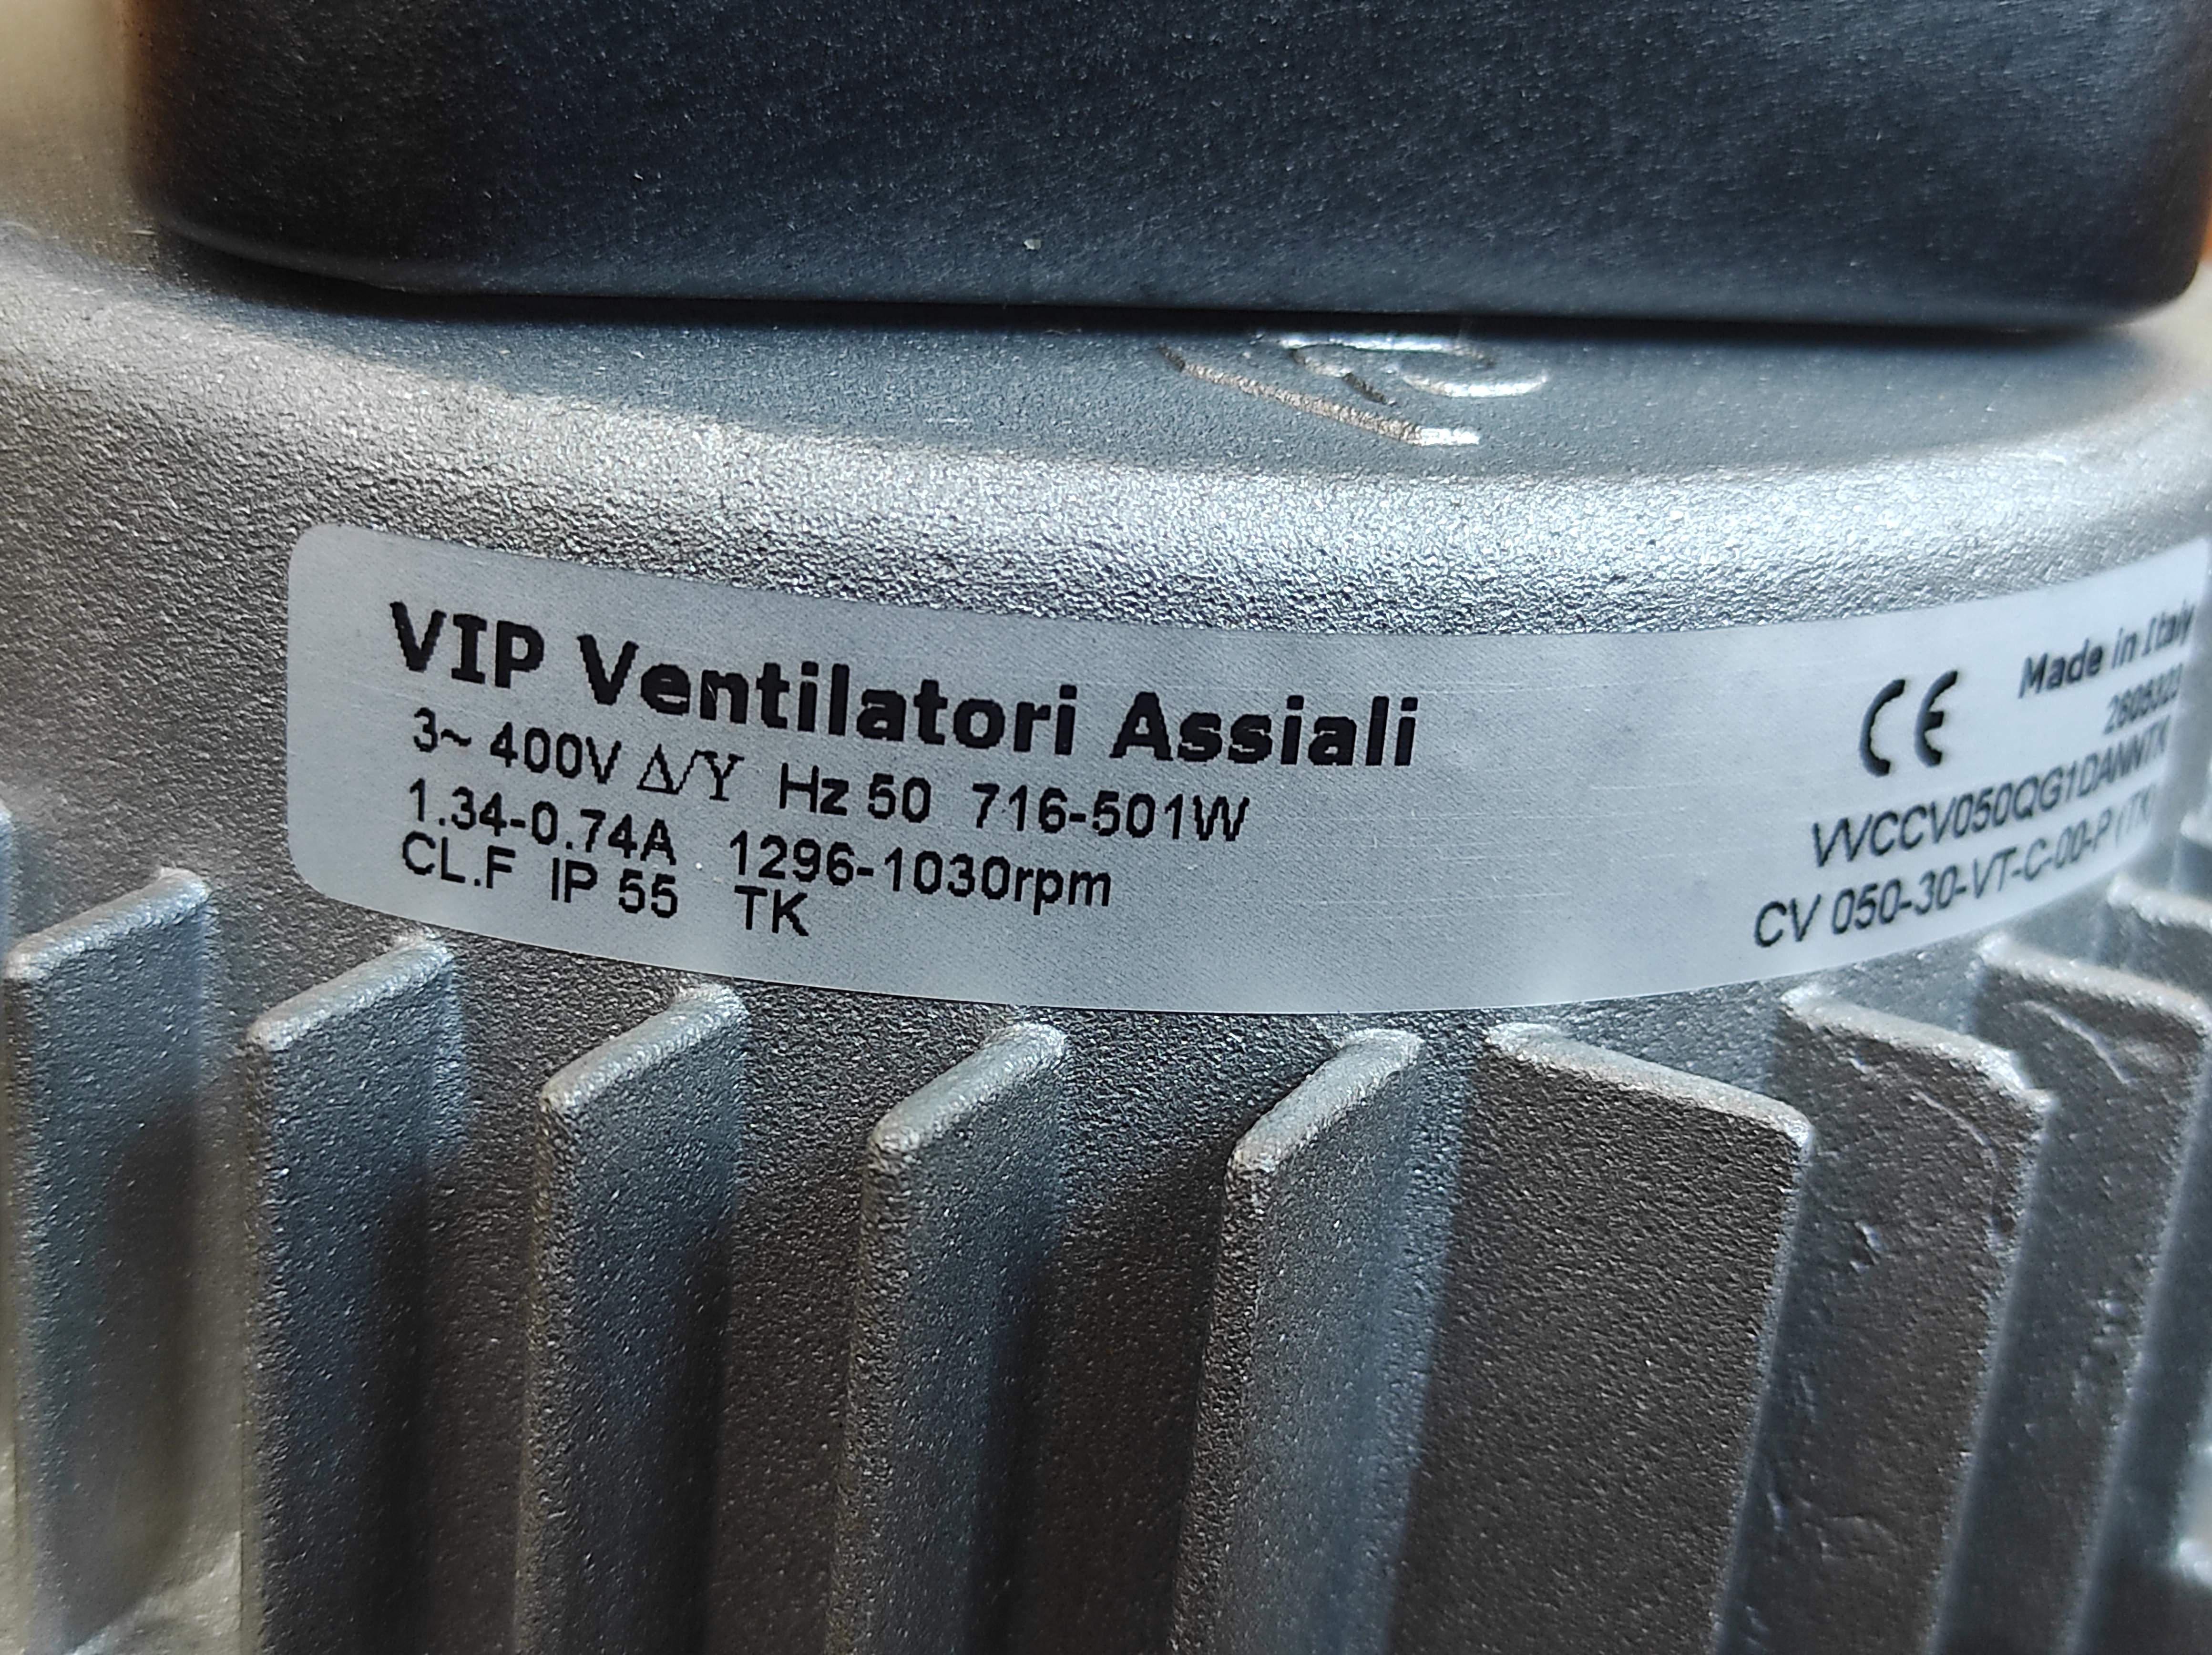 VIP Ventilatori Assiali WCCV050QG1DANNTK 2605323 CV 050-30-VT-C-00-P Fan